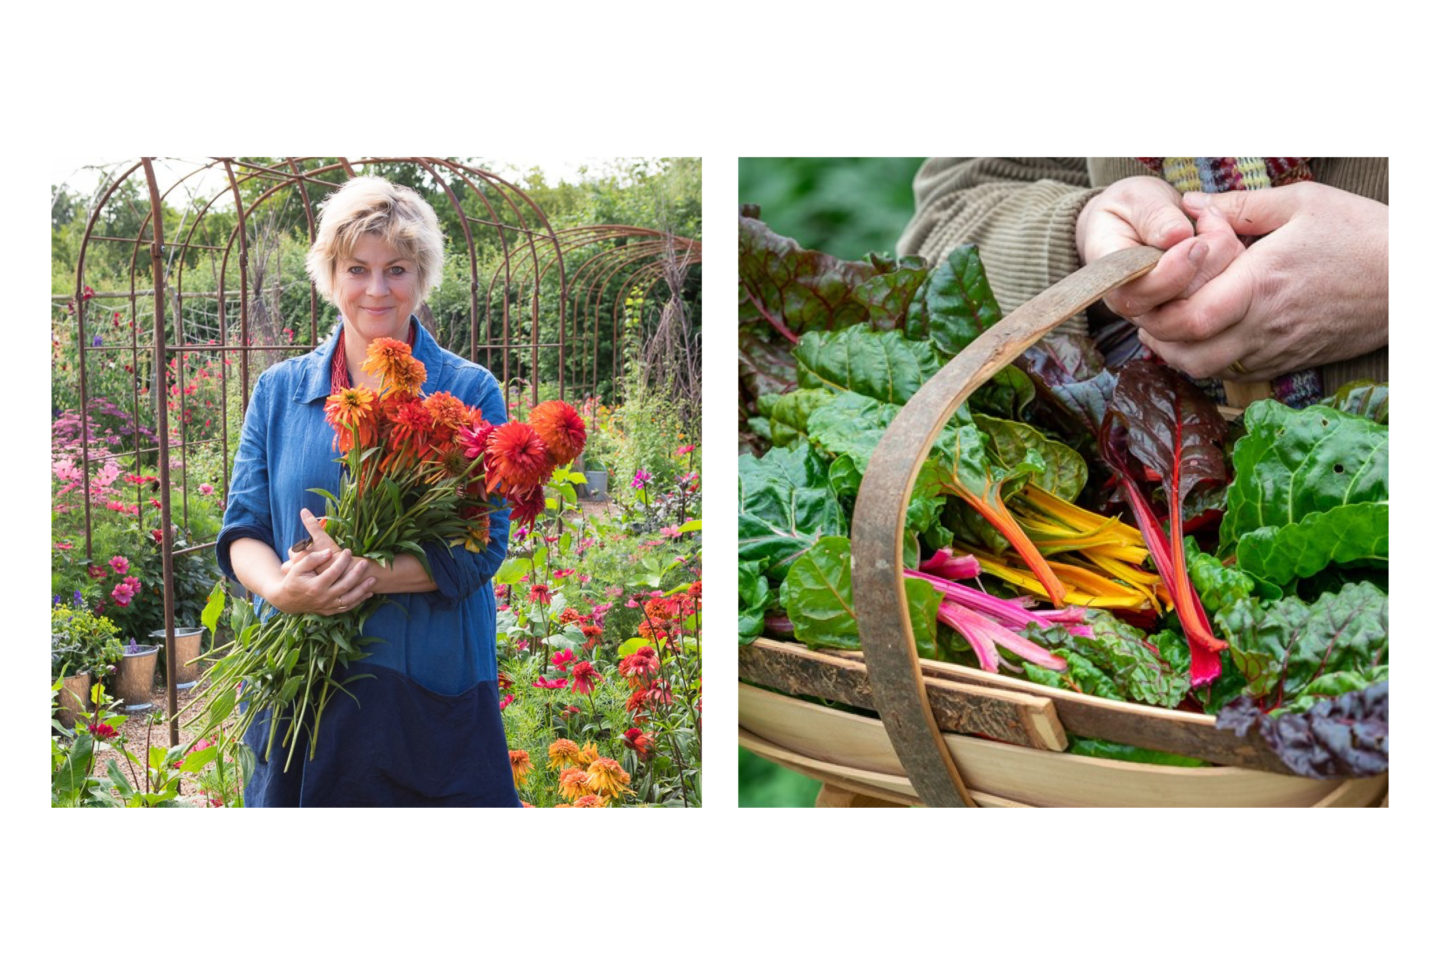 Reve en vert sustainable organic gardening accounts Instagrams to follow